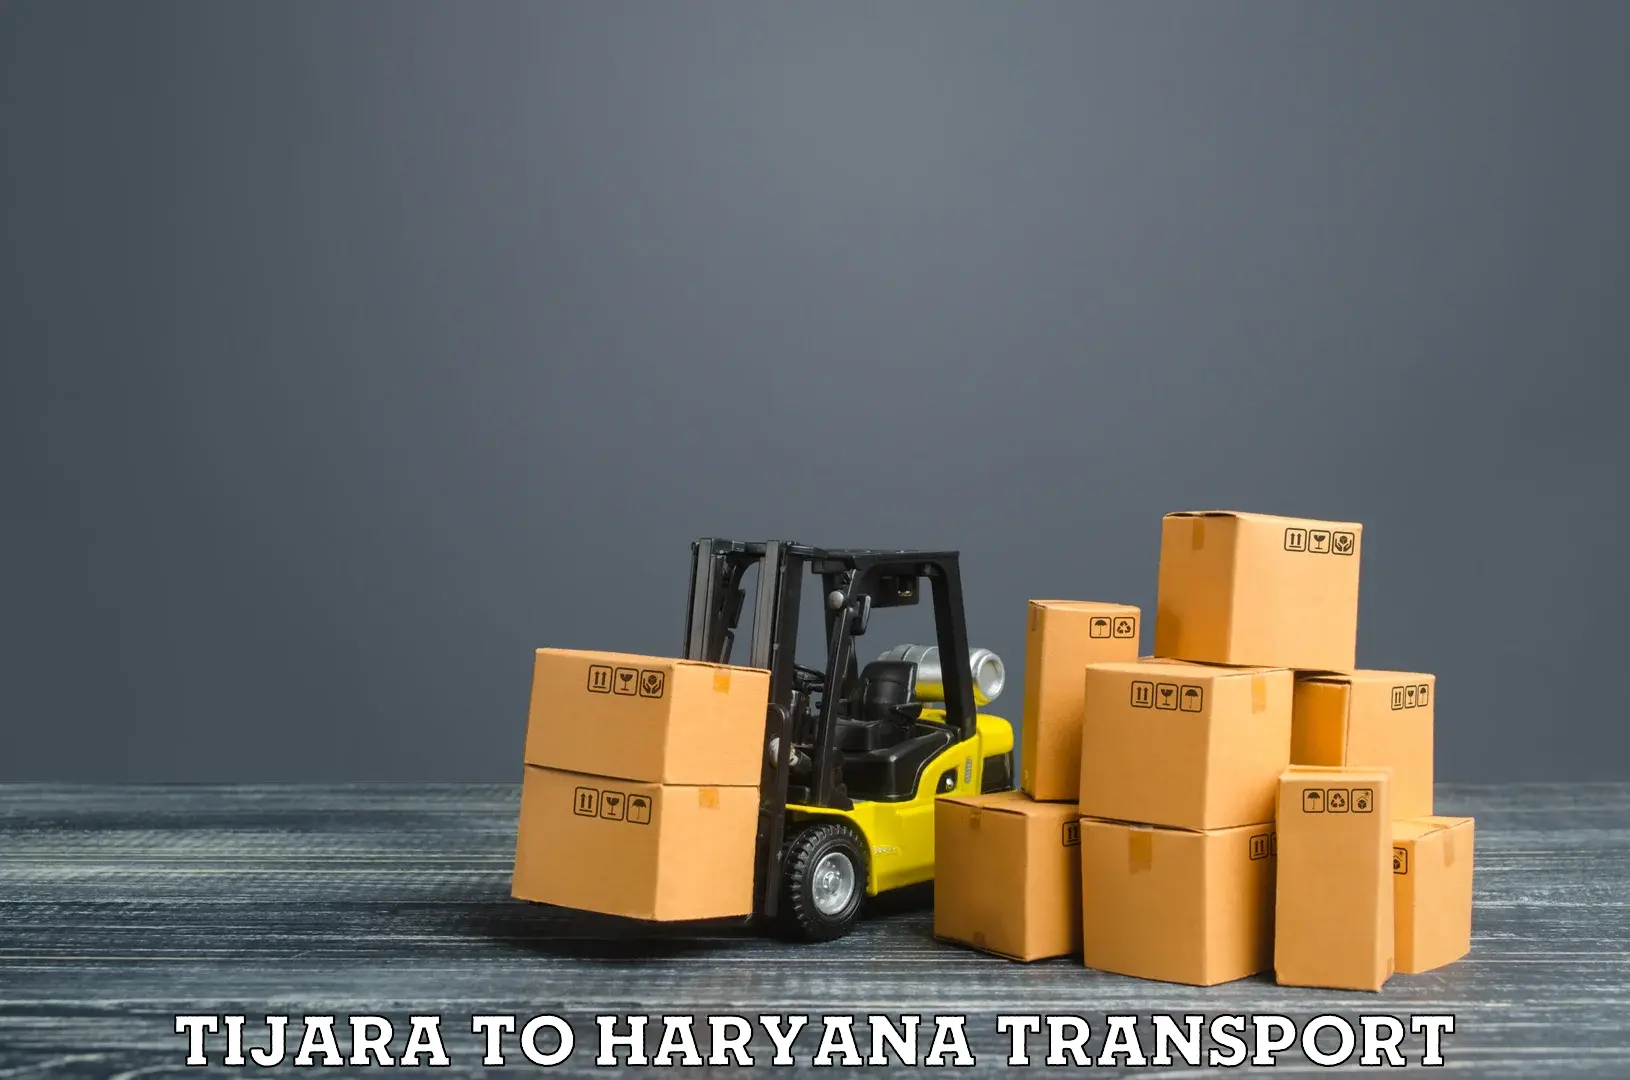 Furniture transport service Tijara to Chirya